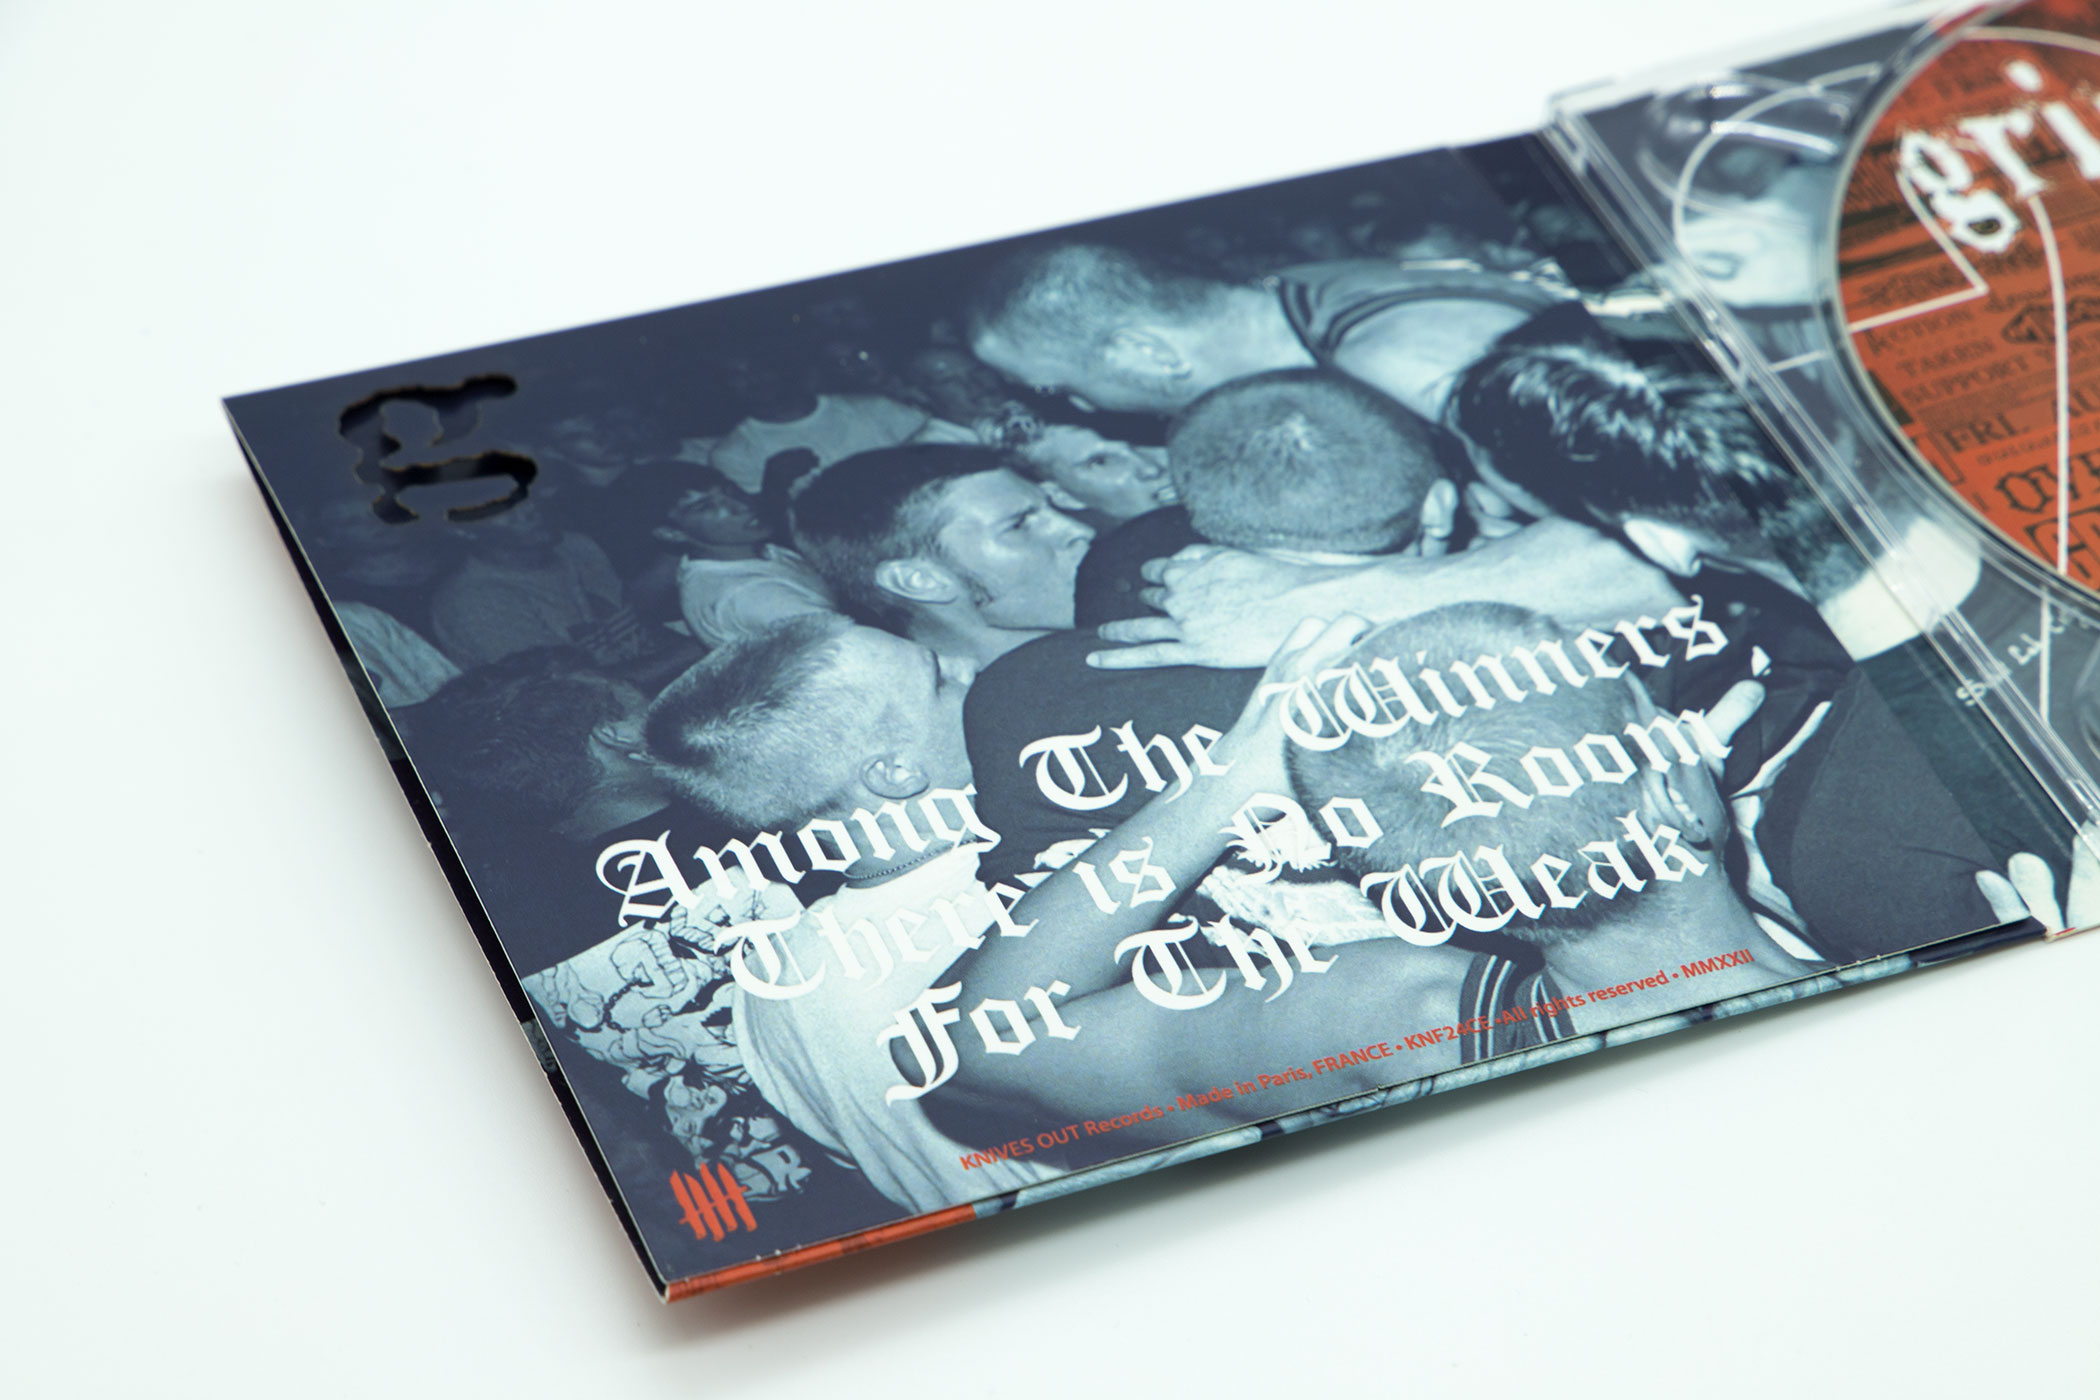 GRIMLOCK "Songs Of Immortality" Die-cut Digipack Enhanced CD